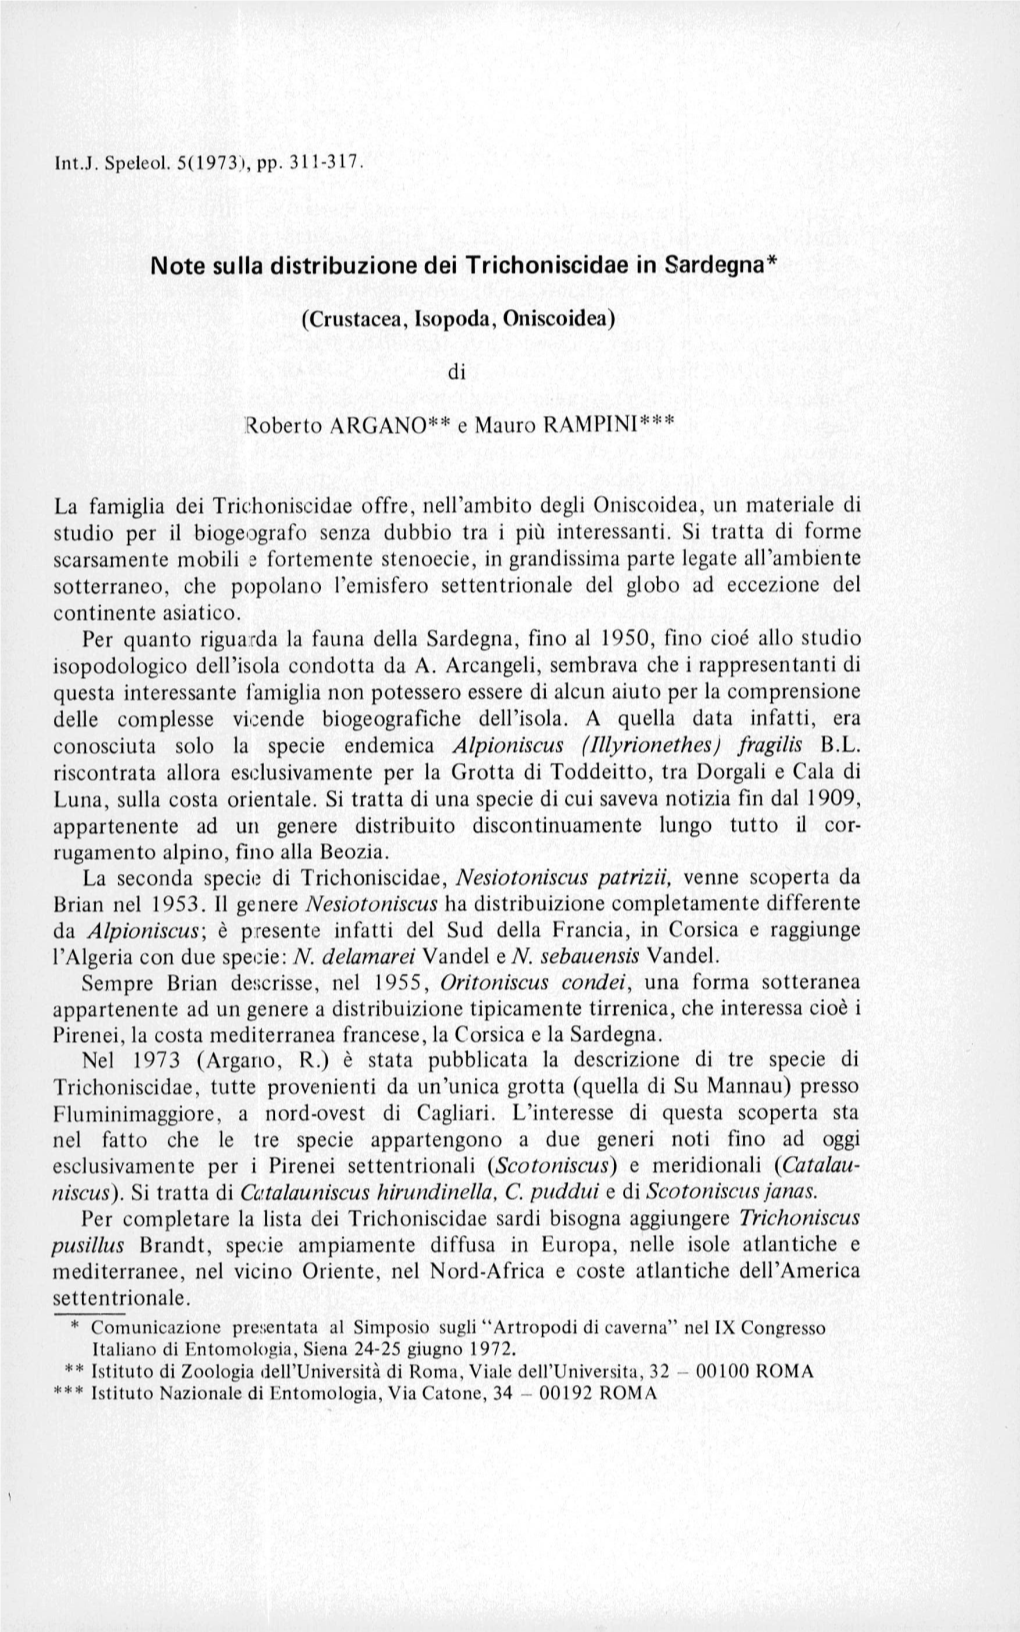 Note Sulla Distribuzione Dei Trichoniscidae in Sardegna (Crustacea, Isopoda, Oniscoidea)